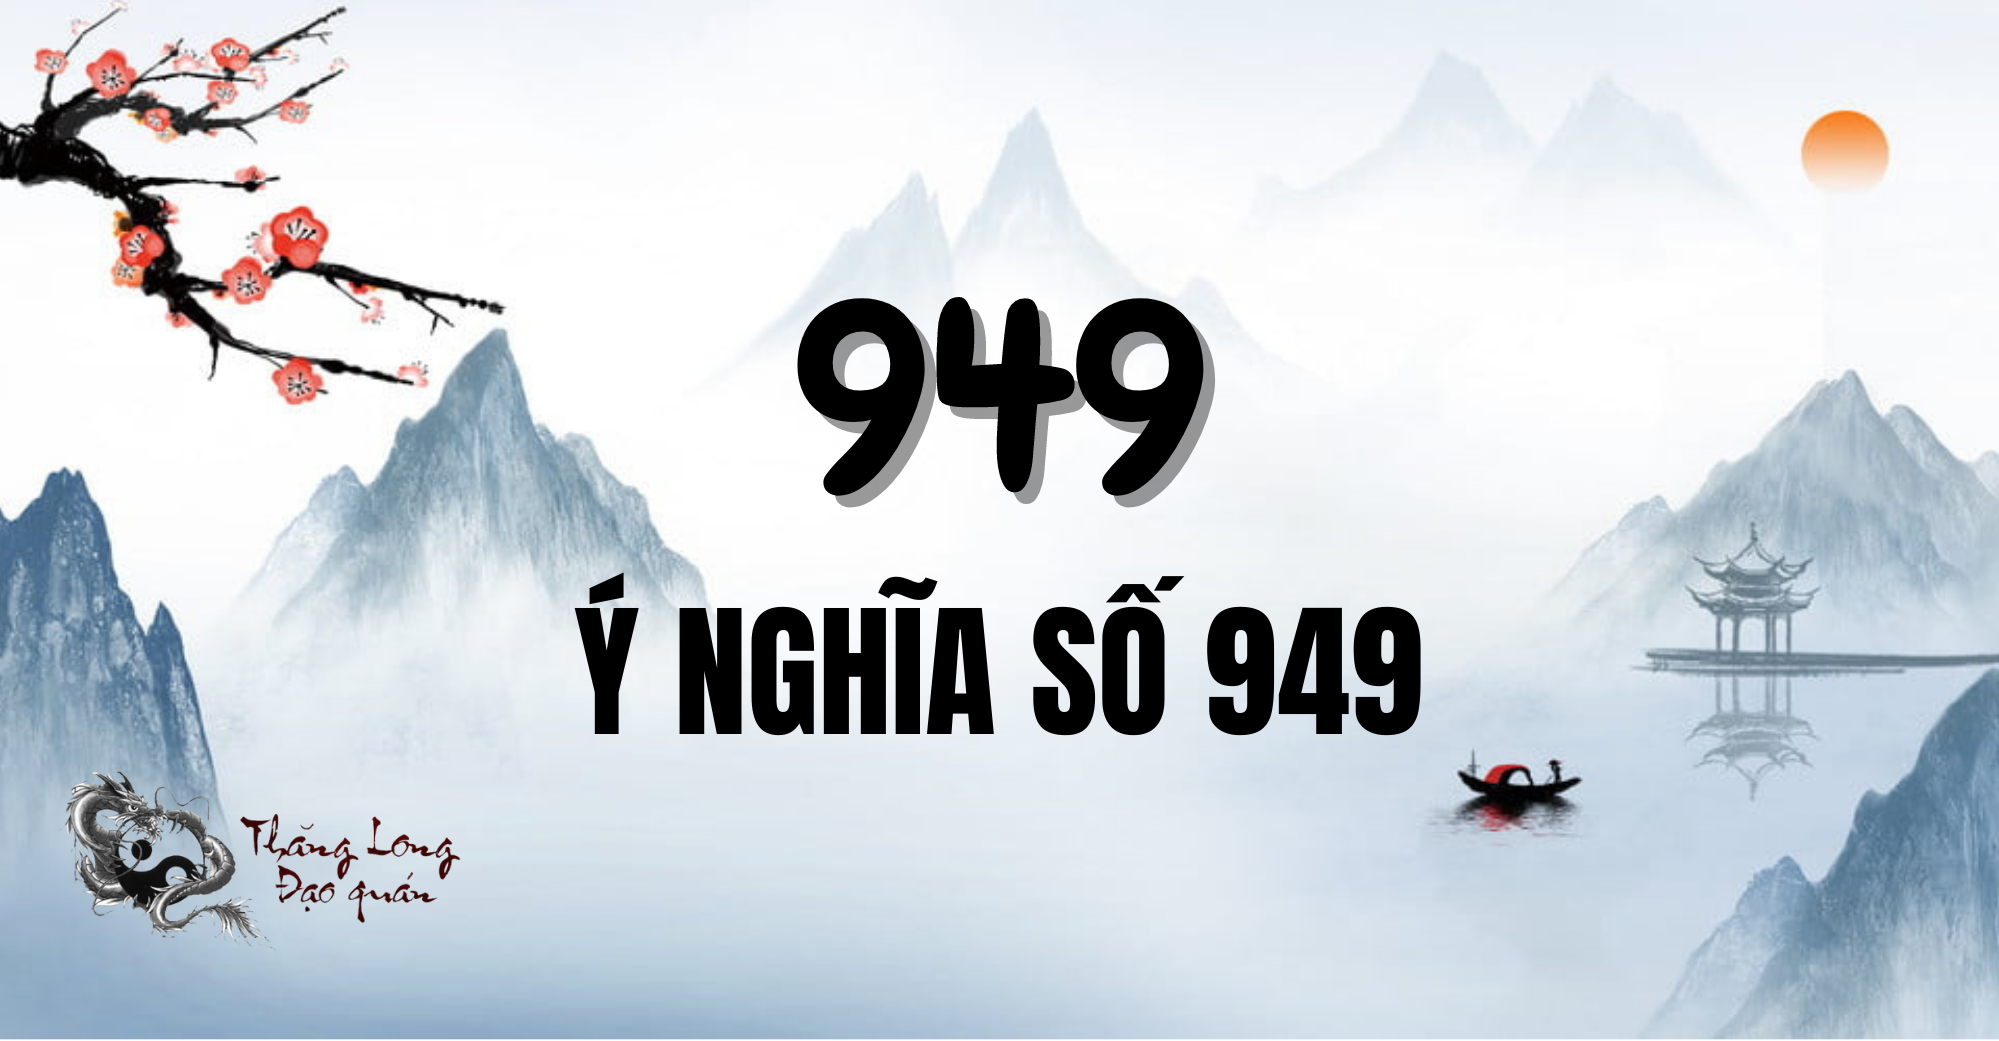 y-nghia-so-949